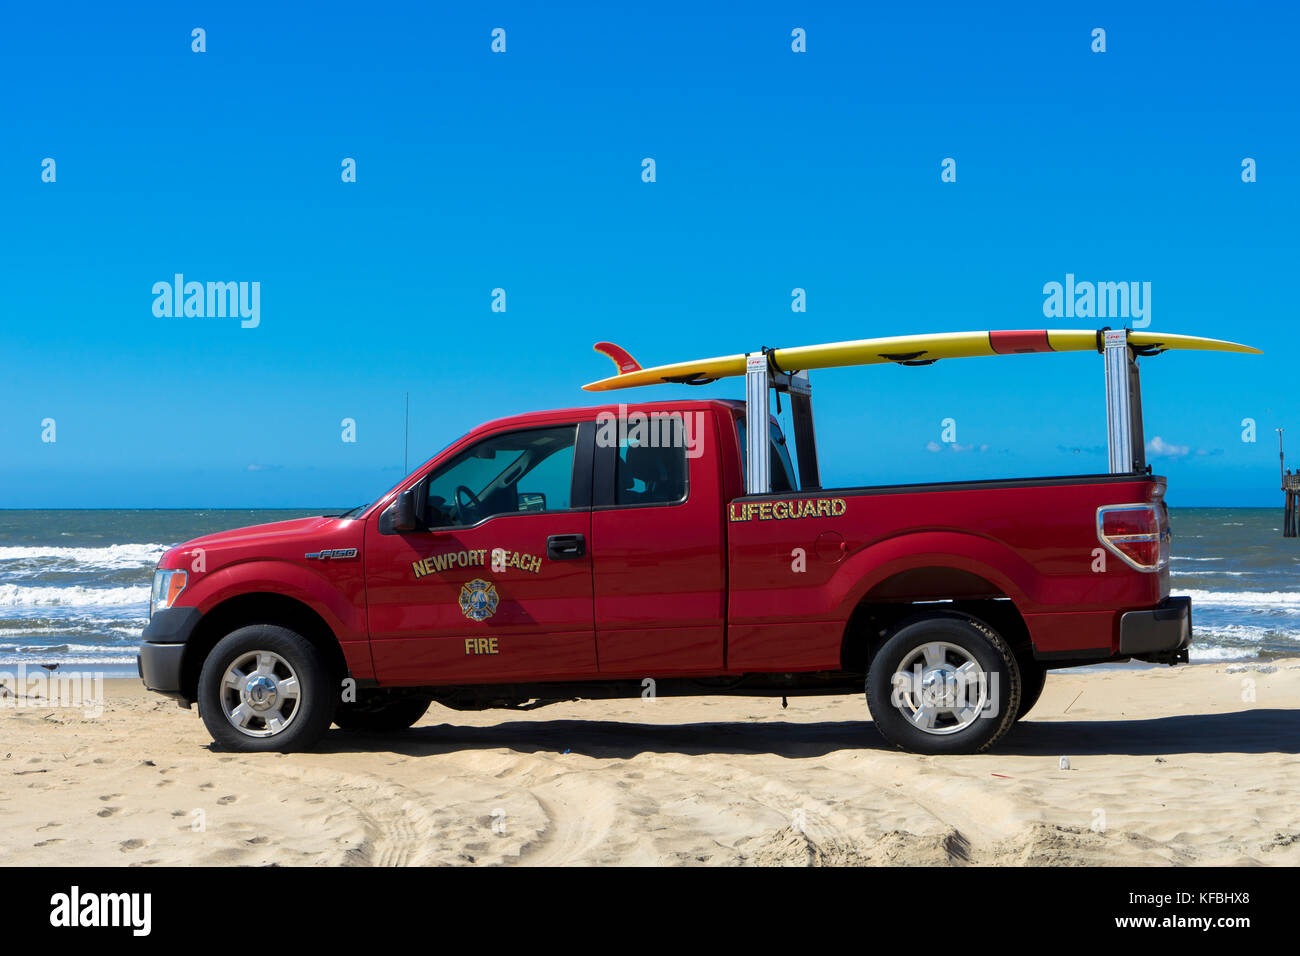 Newport Beach Fire et Lifeguard camionnette stationnée sur la plage de sable. Banque D'Images